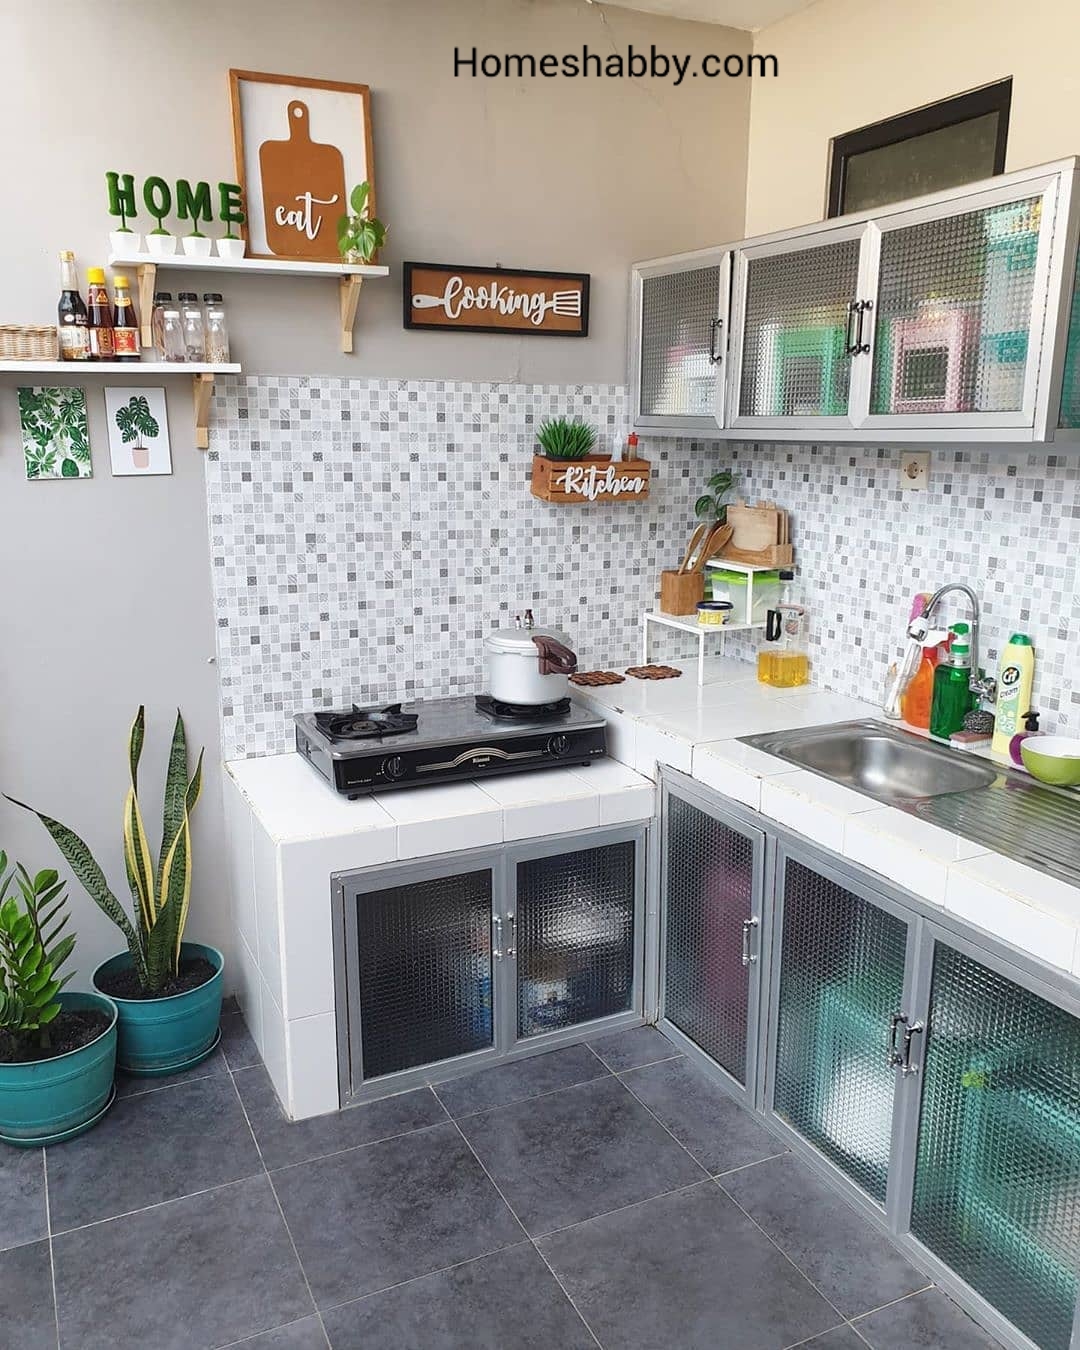 6 Contoh Desain Dapur Rumah Minimalis Type 36 Terbaru Homeshabby